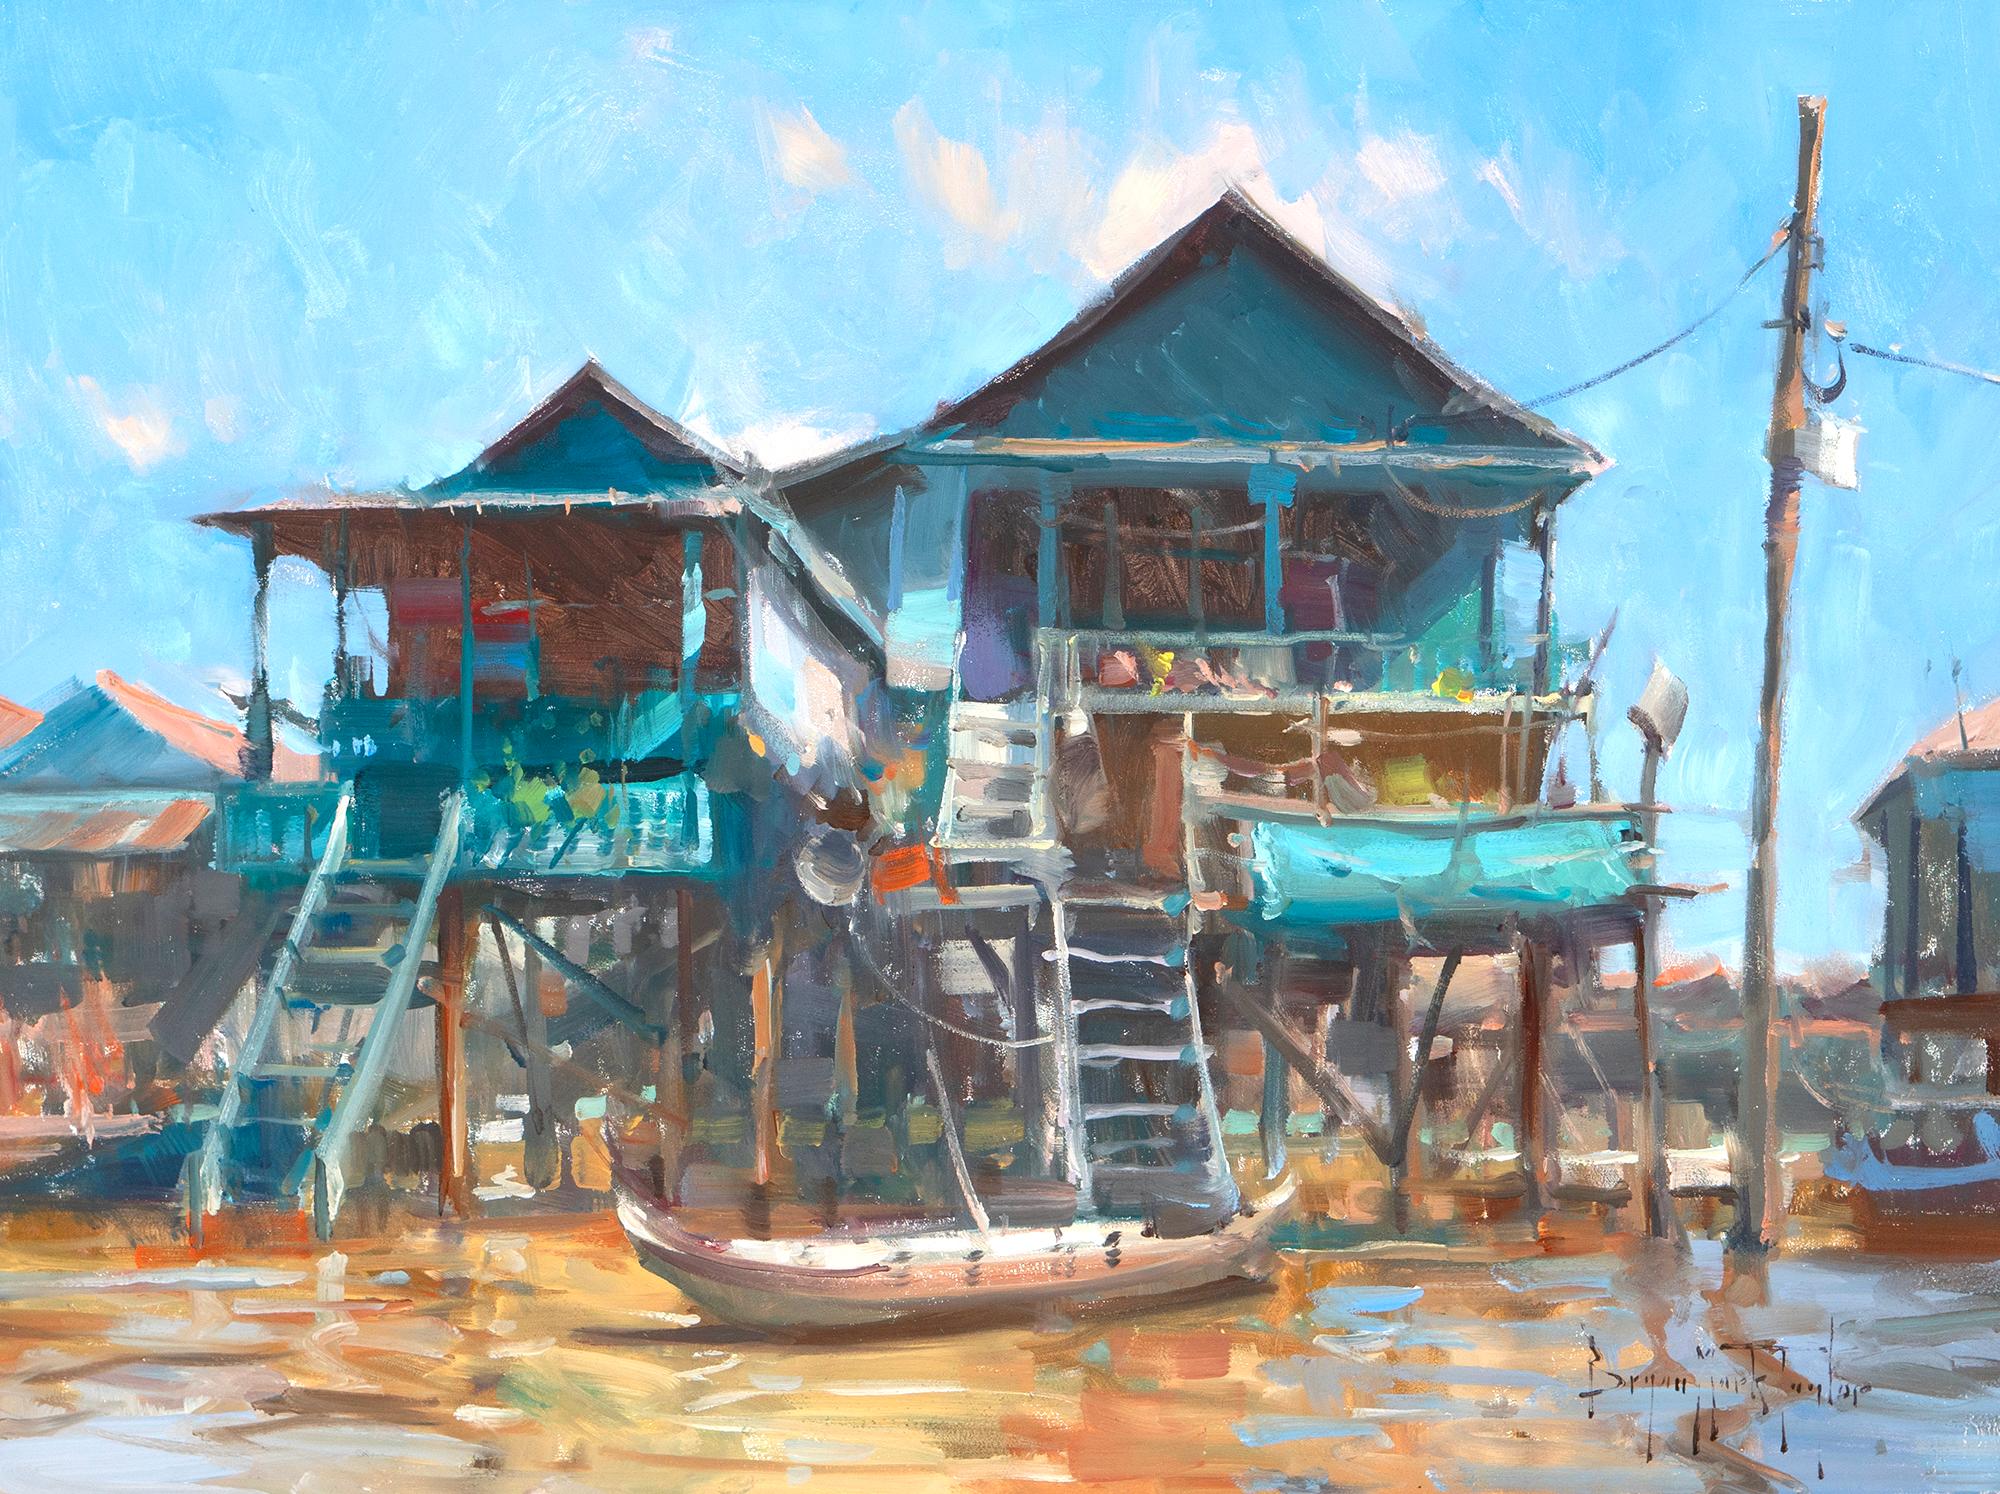 Landscape Painting Bryan Mark Taylor - « Fleating City », scène impressionniste moderne du Cambodge